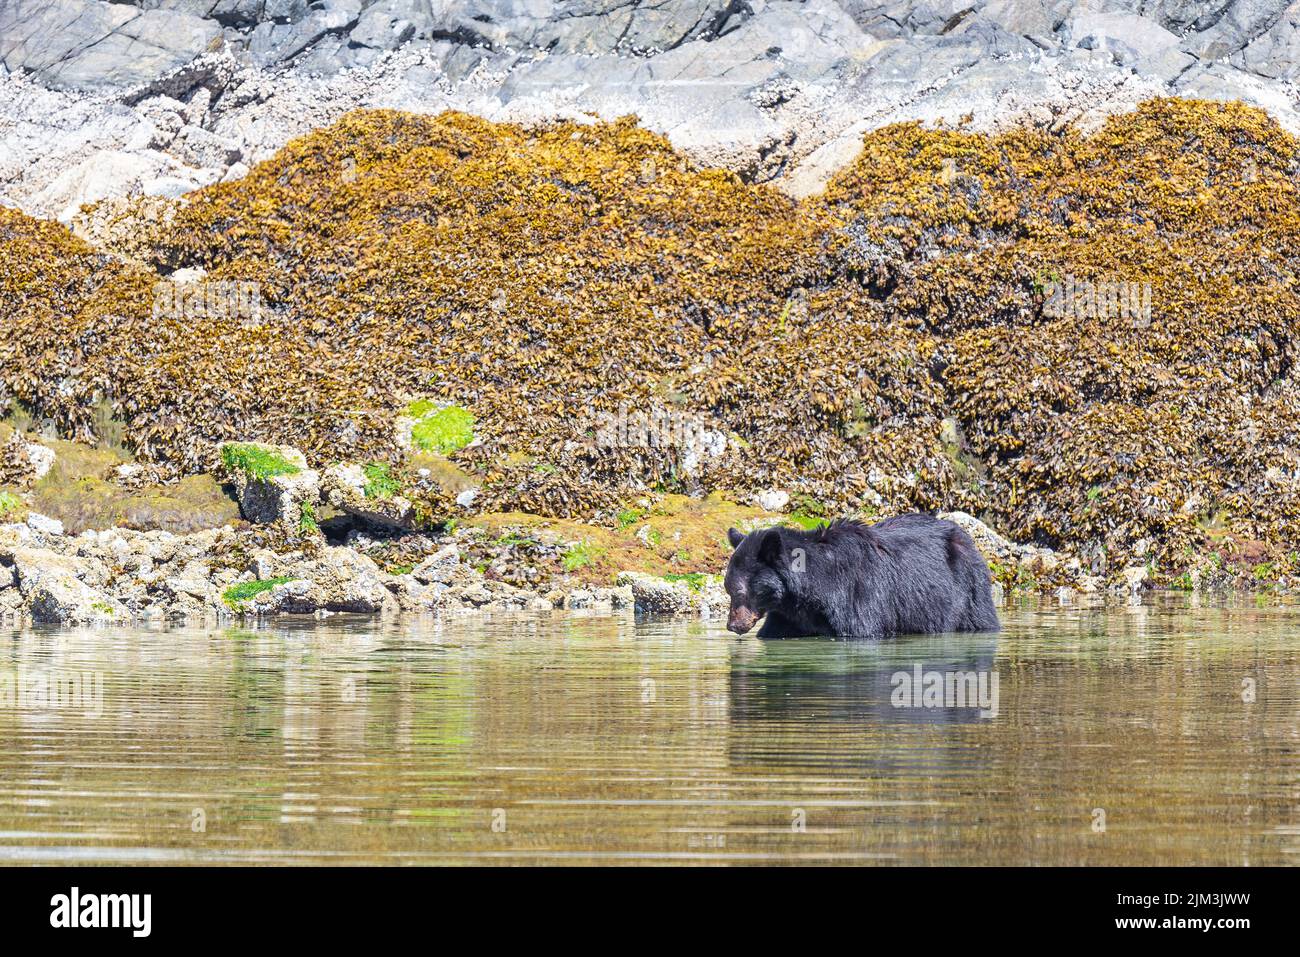 Pesca del oso negro (Ursus americanus) cerca de Tofino, Vancouver Island, British Columbia, Canadá. Foto de stock